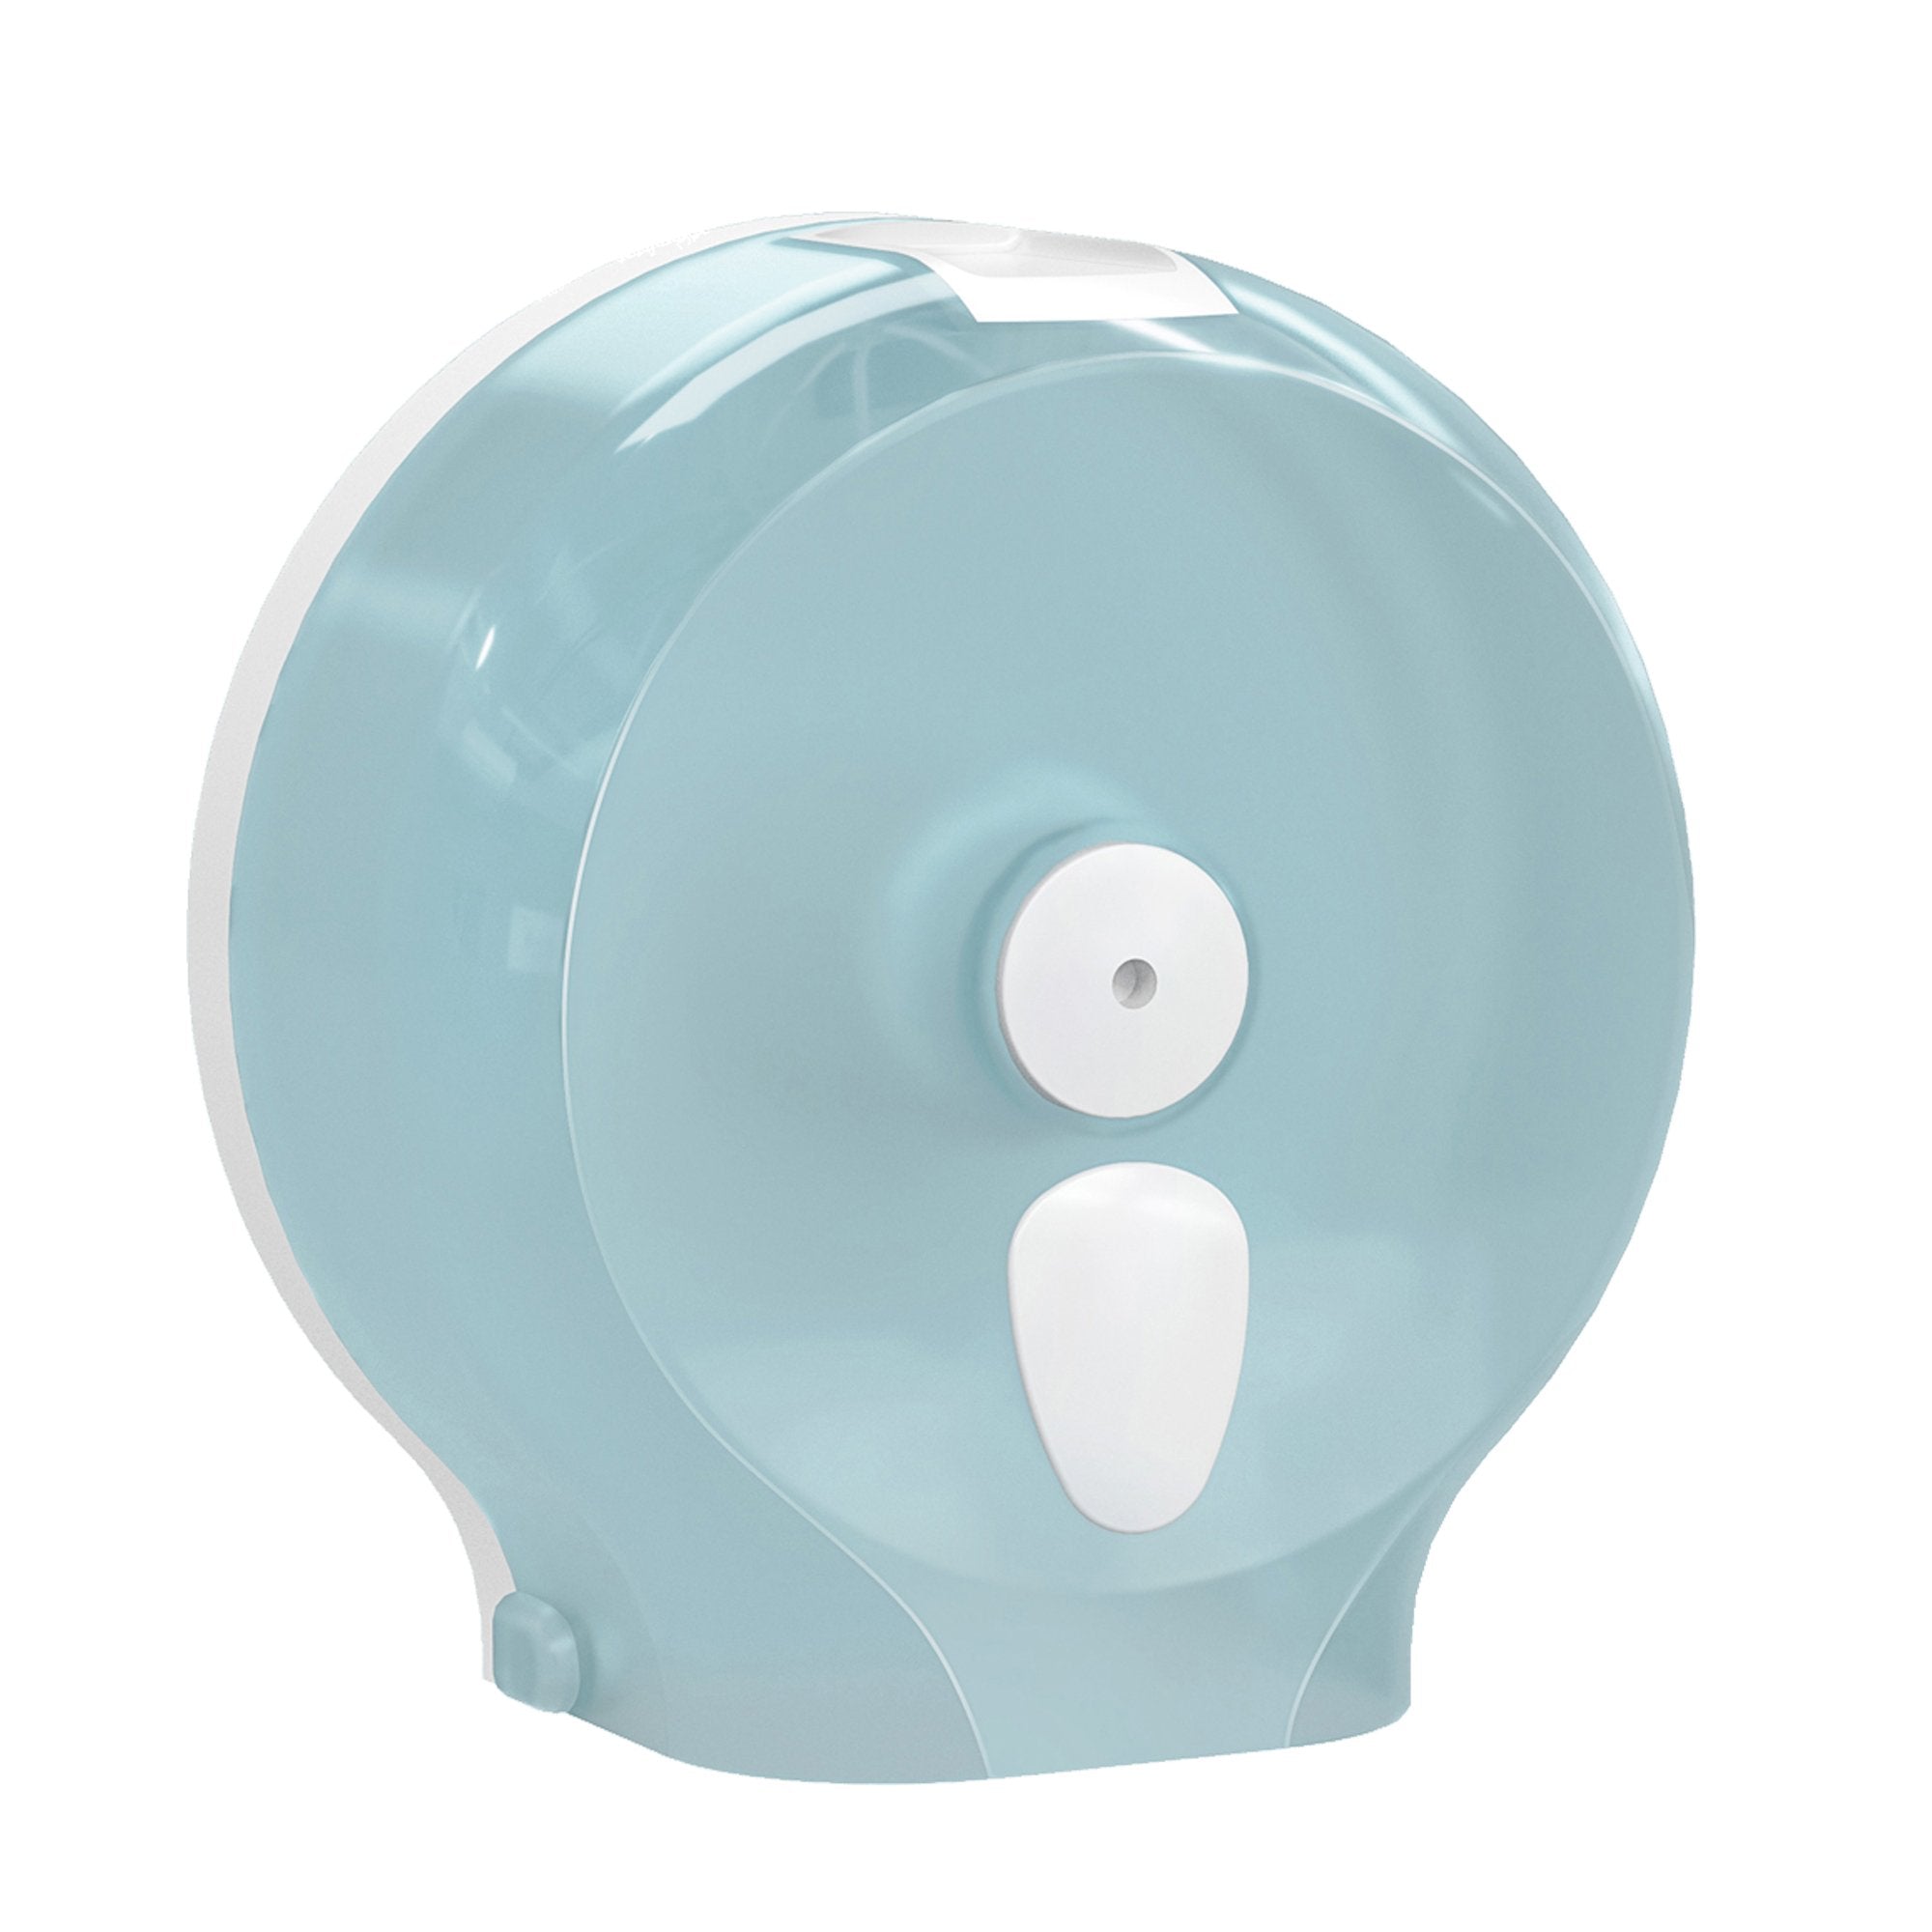 mar-plast-dispenser-carta-igienica-mini-jumbo-bianco-azzurro-replast